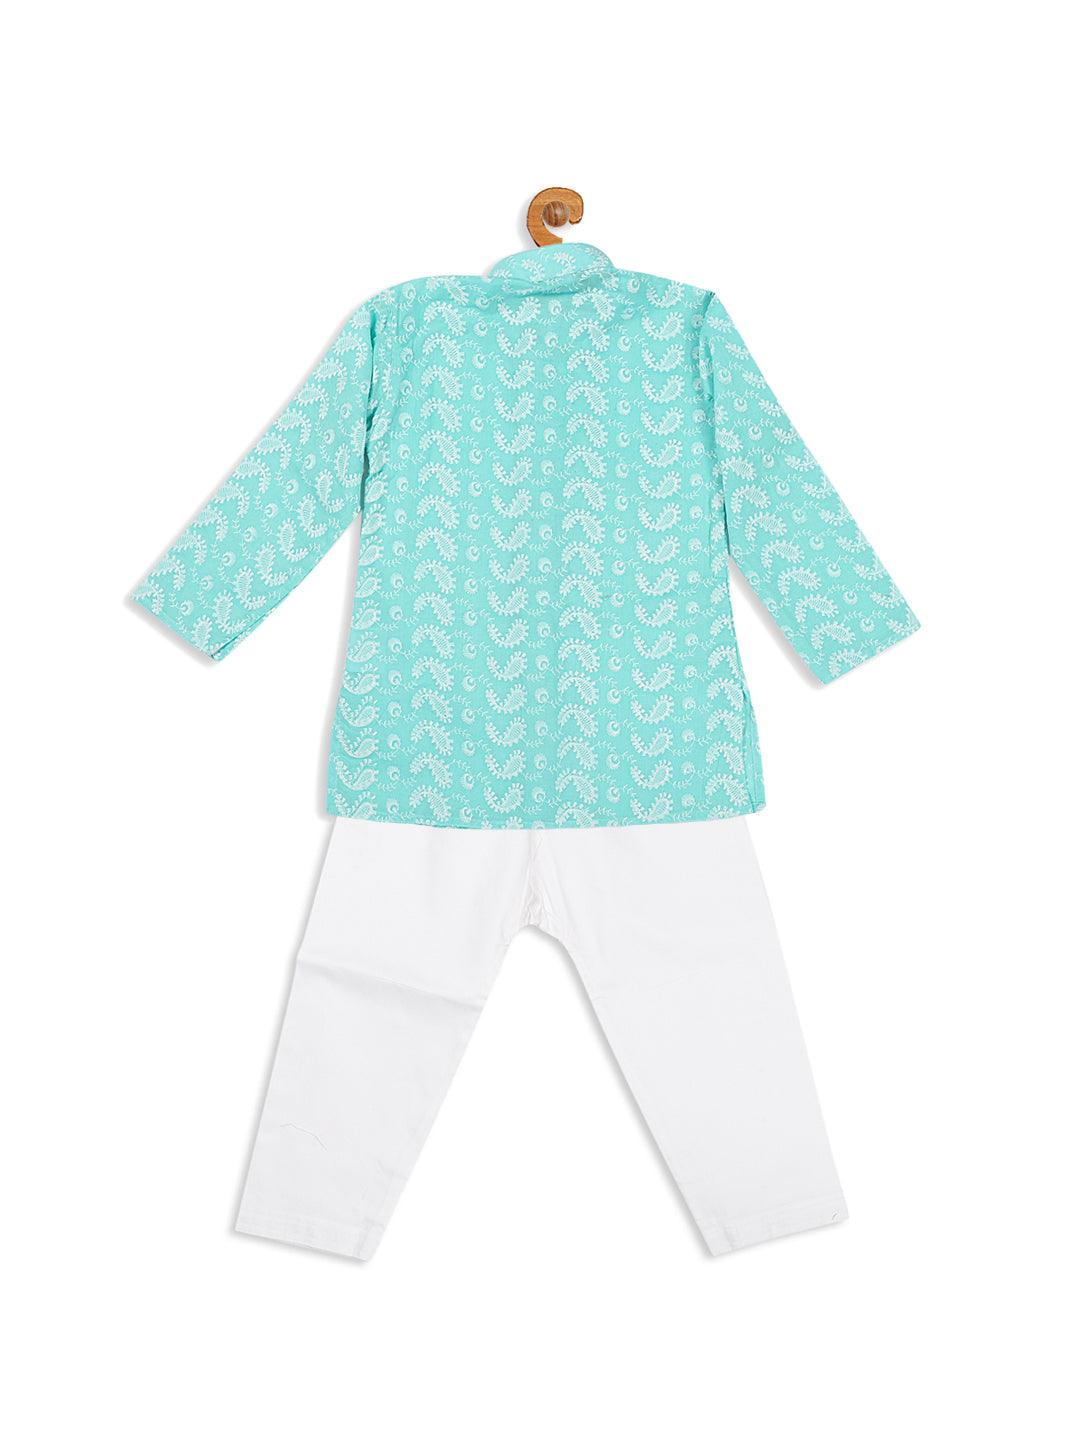 VASTRAMAY SISHU Boy's Green Chikankari Pure Cotton Kurta With White Pyjama Set - Uboric